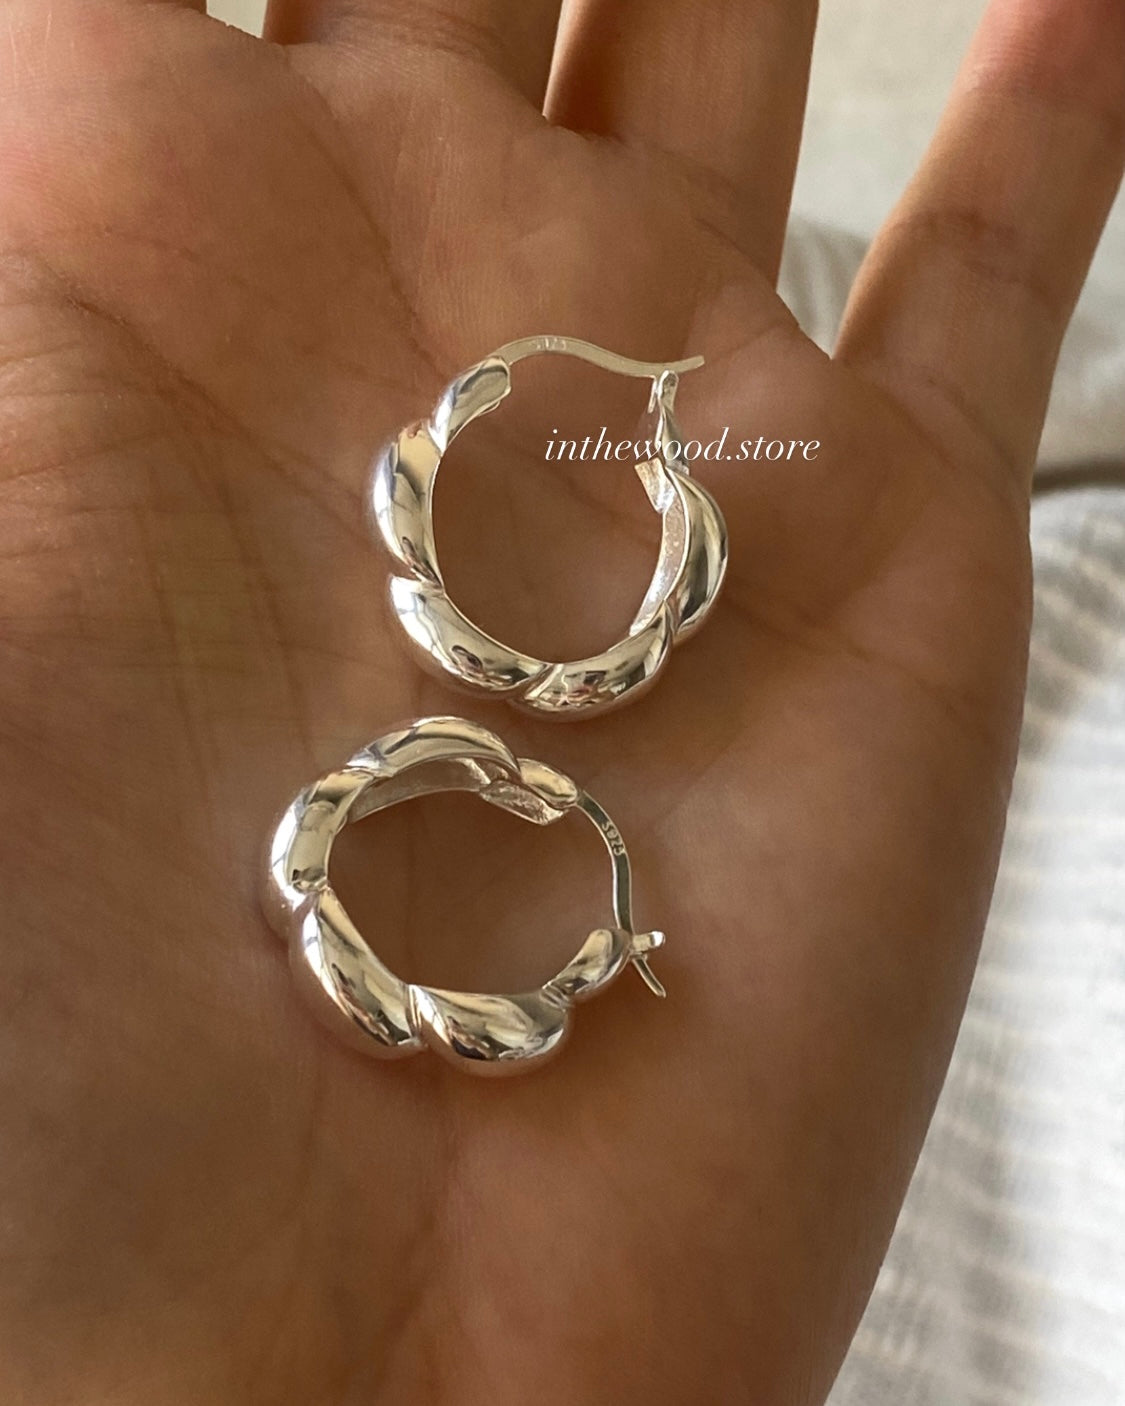 [925silver] Bold Twist Earrings